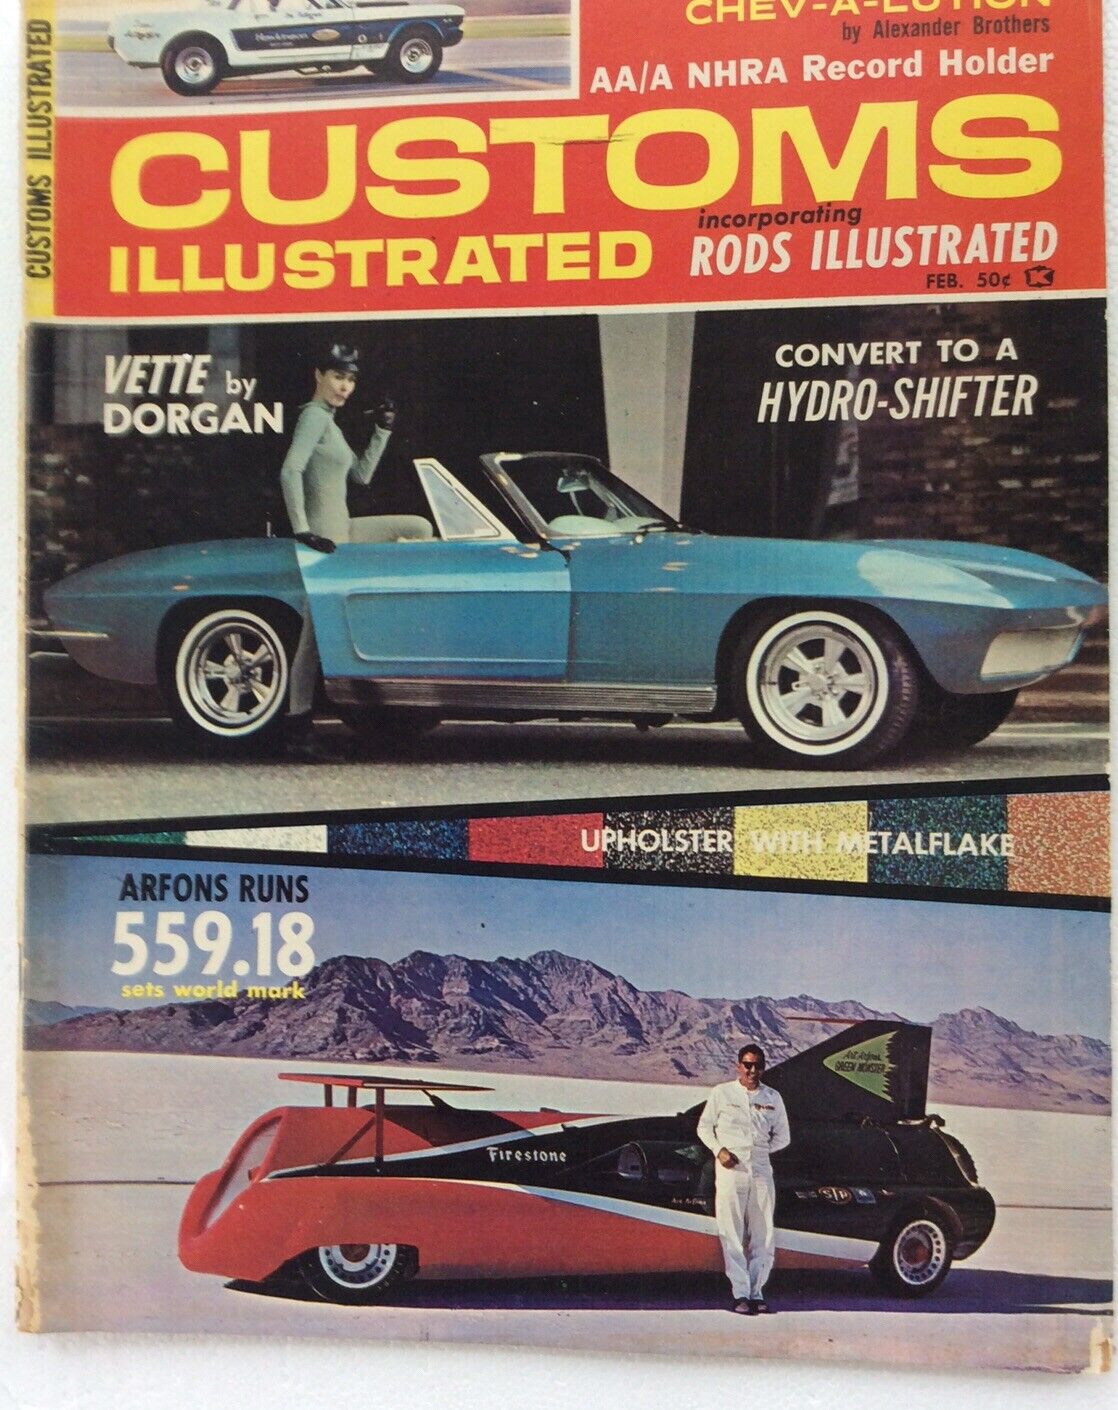 CUSTOMS ILLUSTRATED Magazine February 65 Hot Rod 427 Mustang Vette